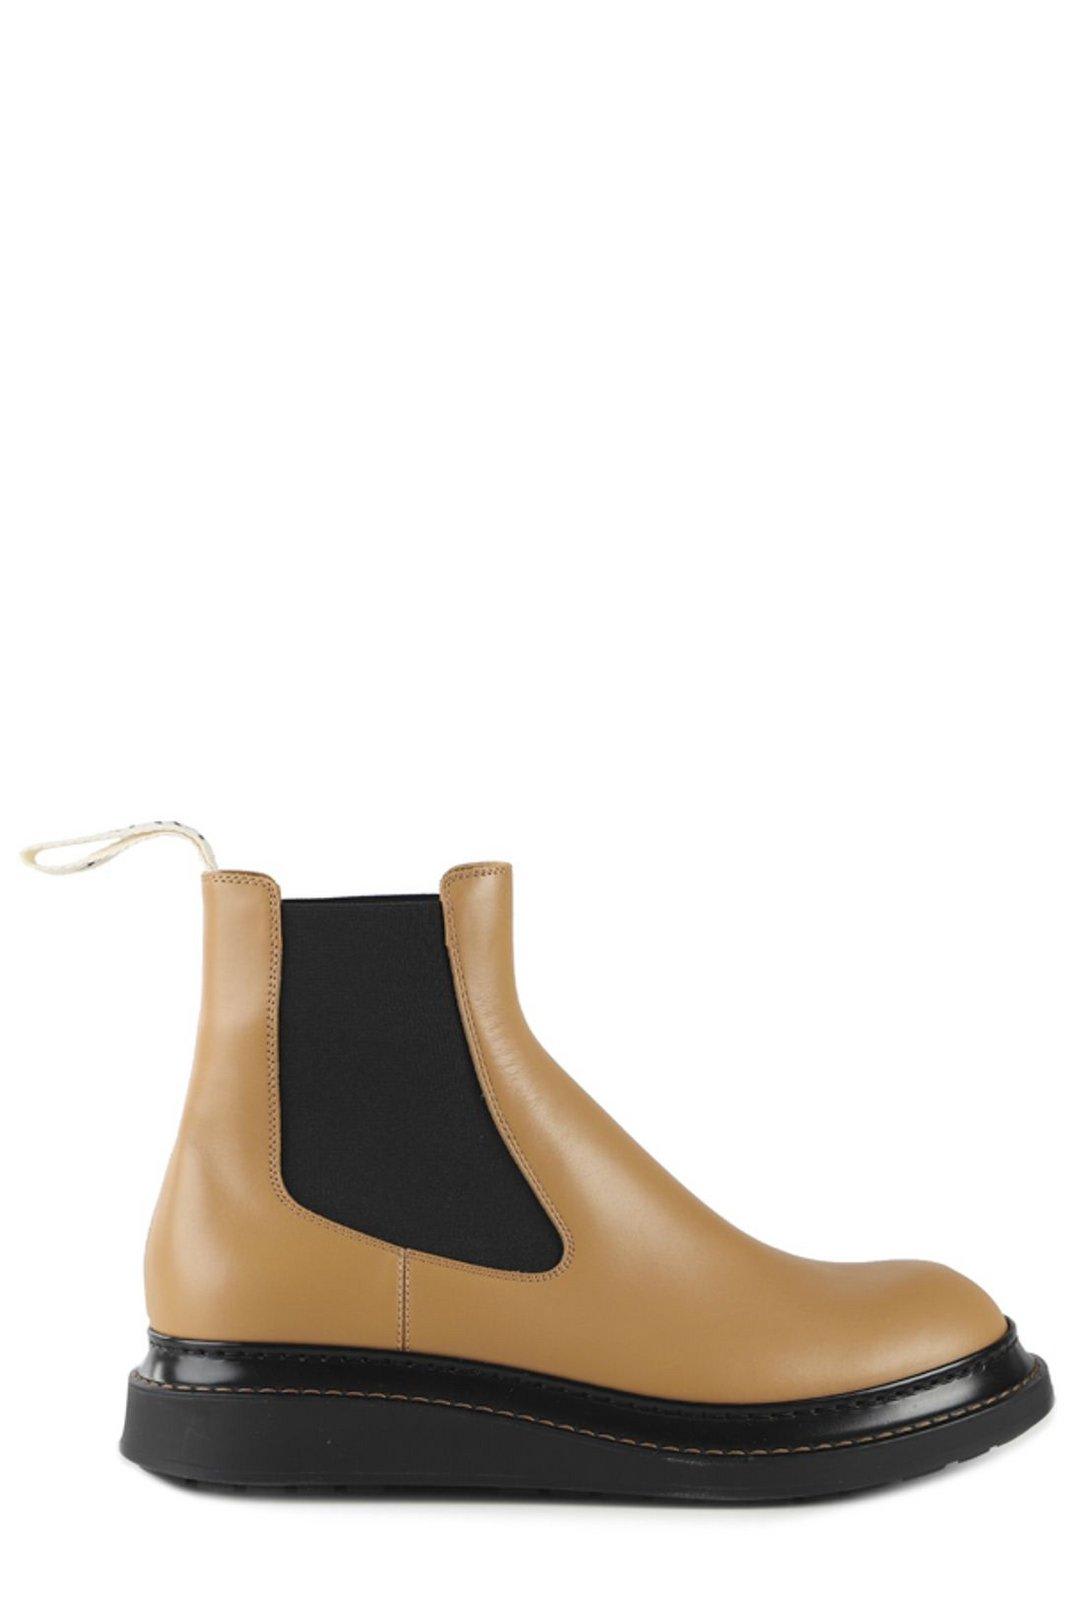 Loewe Slip-on Chelsea Boots